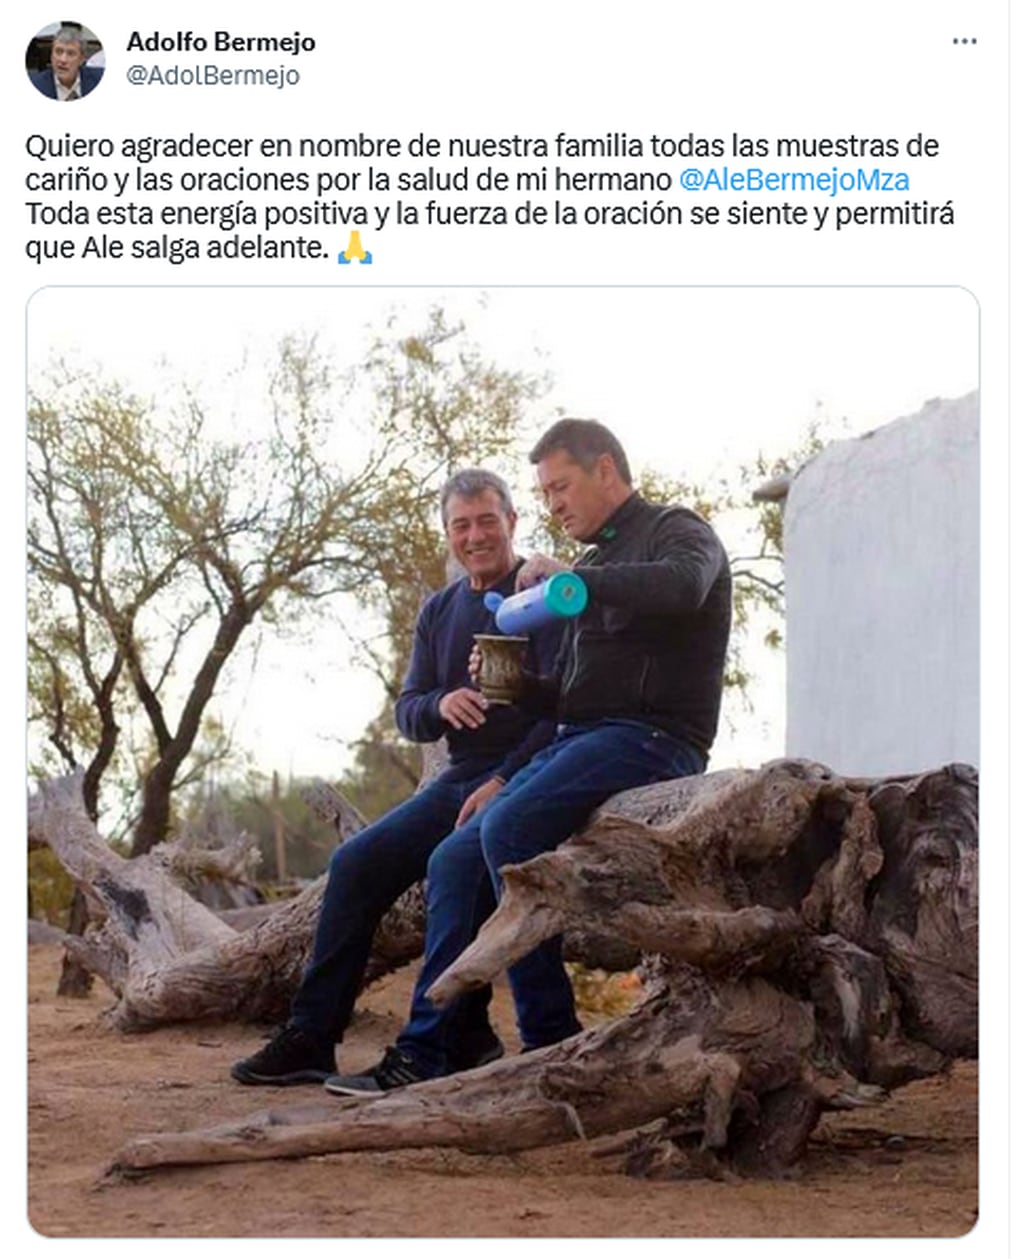 Adolfo Bermejo publicó en Twitter un hilo para informar el estado de salud de su hermano. Twitter.